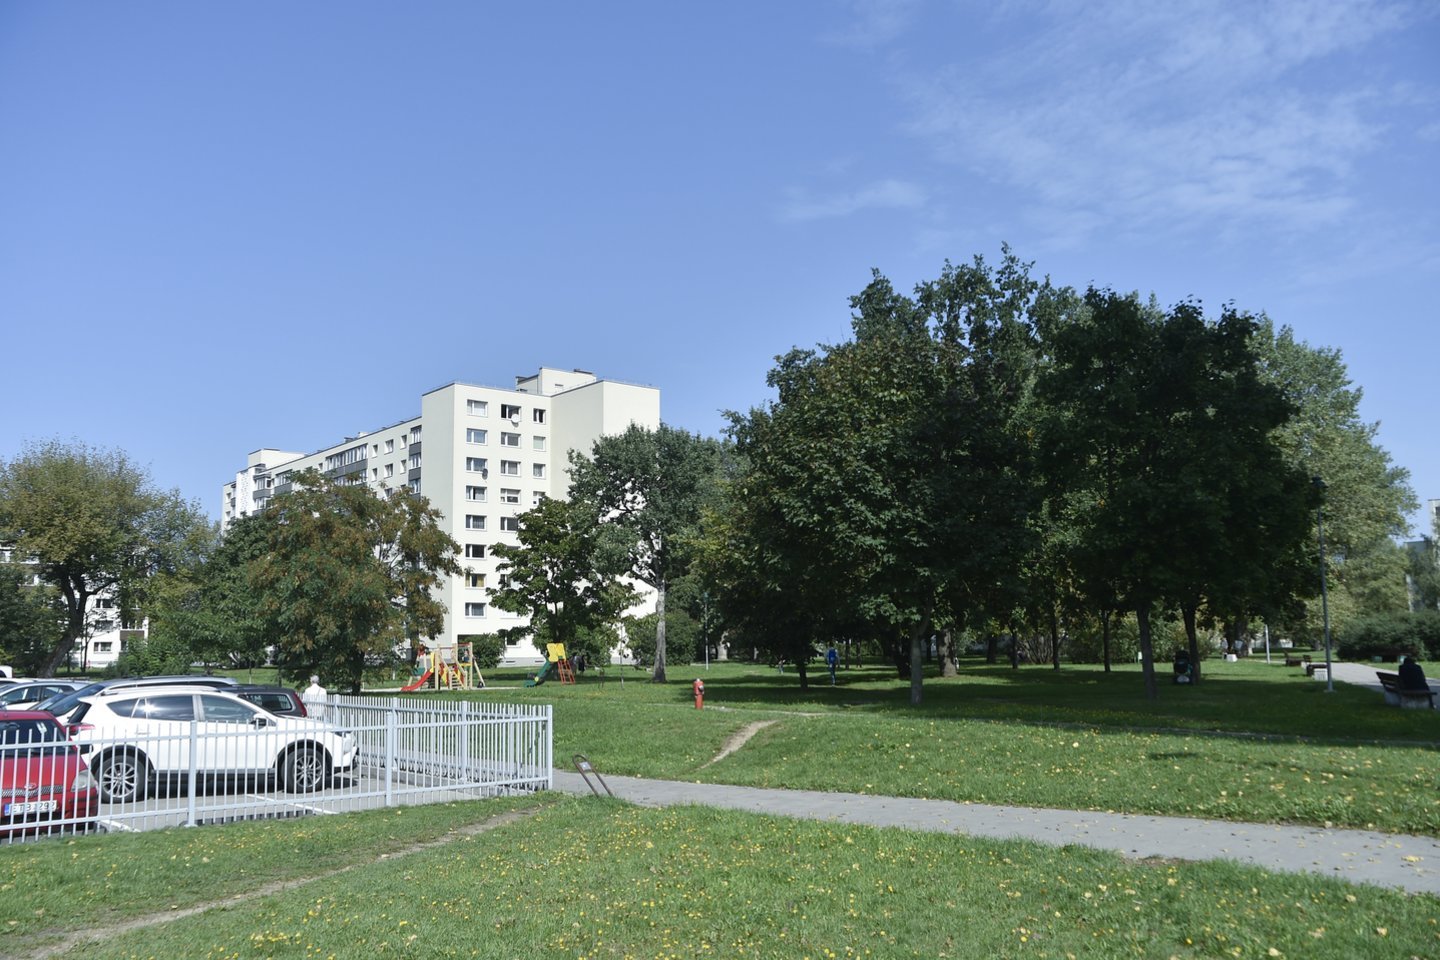 Pasak R.Rudukienės, apie 1,5 ha ploto viešojoje erdvėje ateityje gali būti įrengta aikštė, vaikų žaidimų aikštelės, takai, parko želdynai.